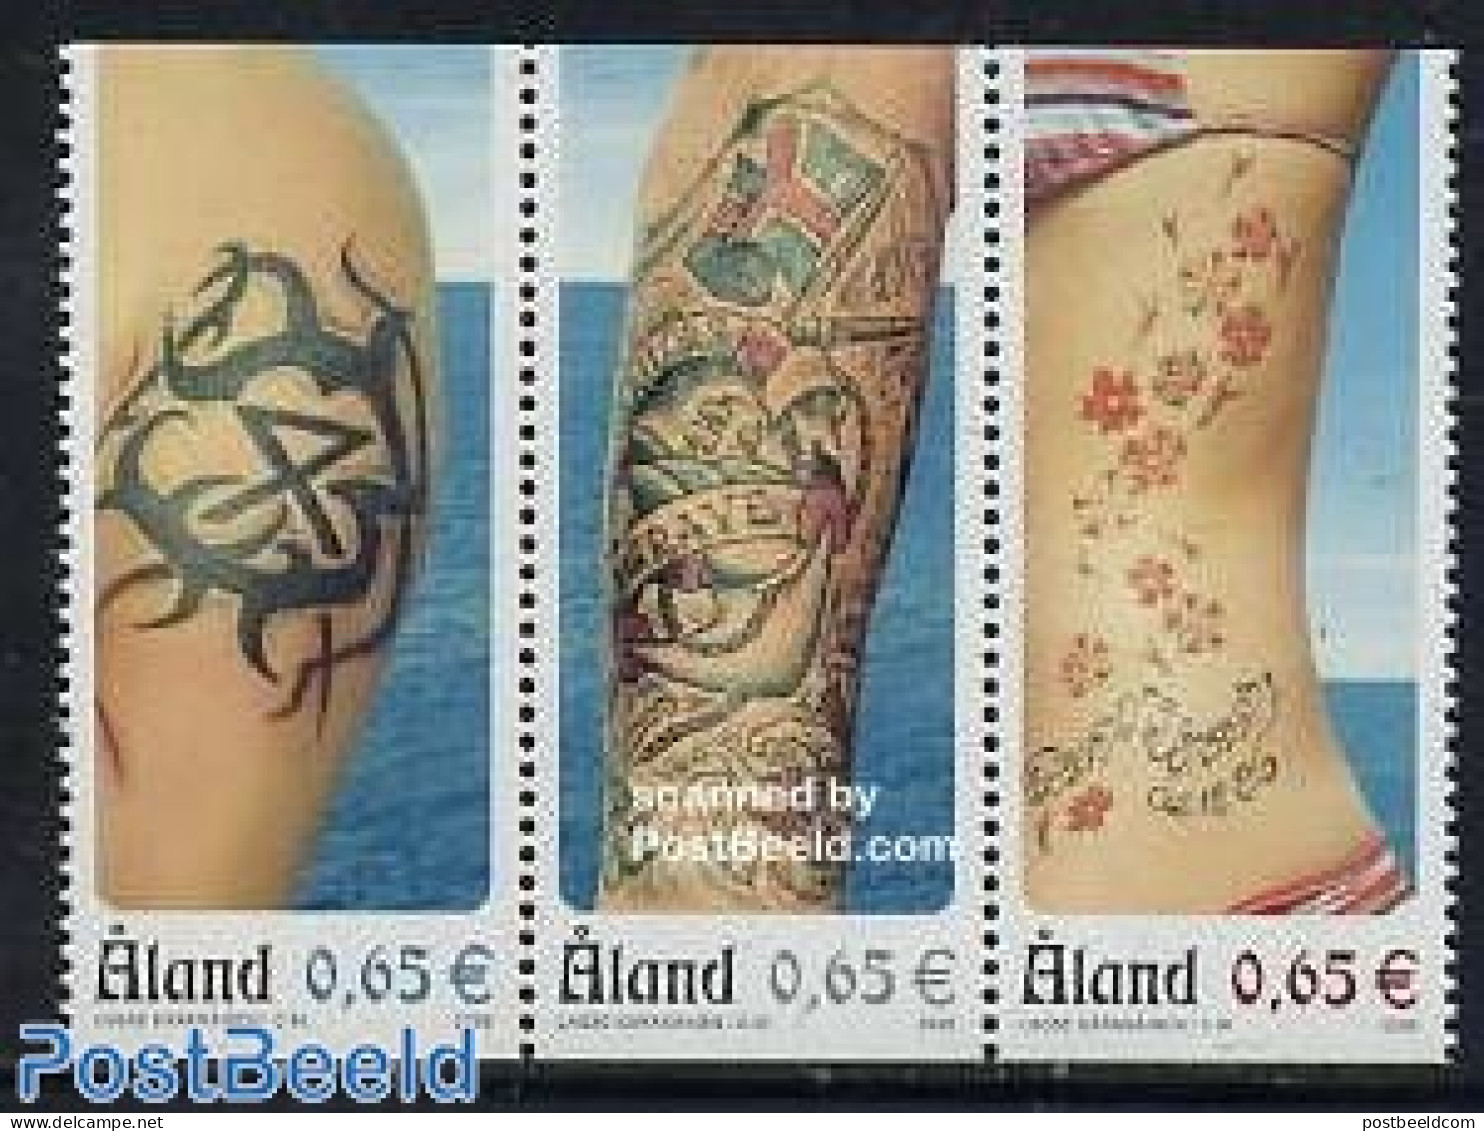 Aland 2006 Tattoos 3v [::], Mint NH, Art - Fashion - Tattoos - Kostums